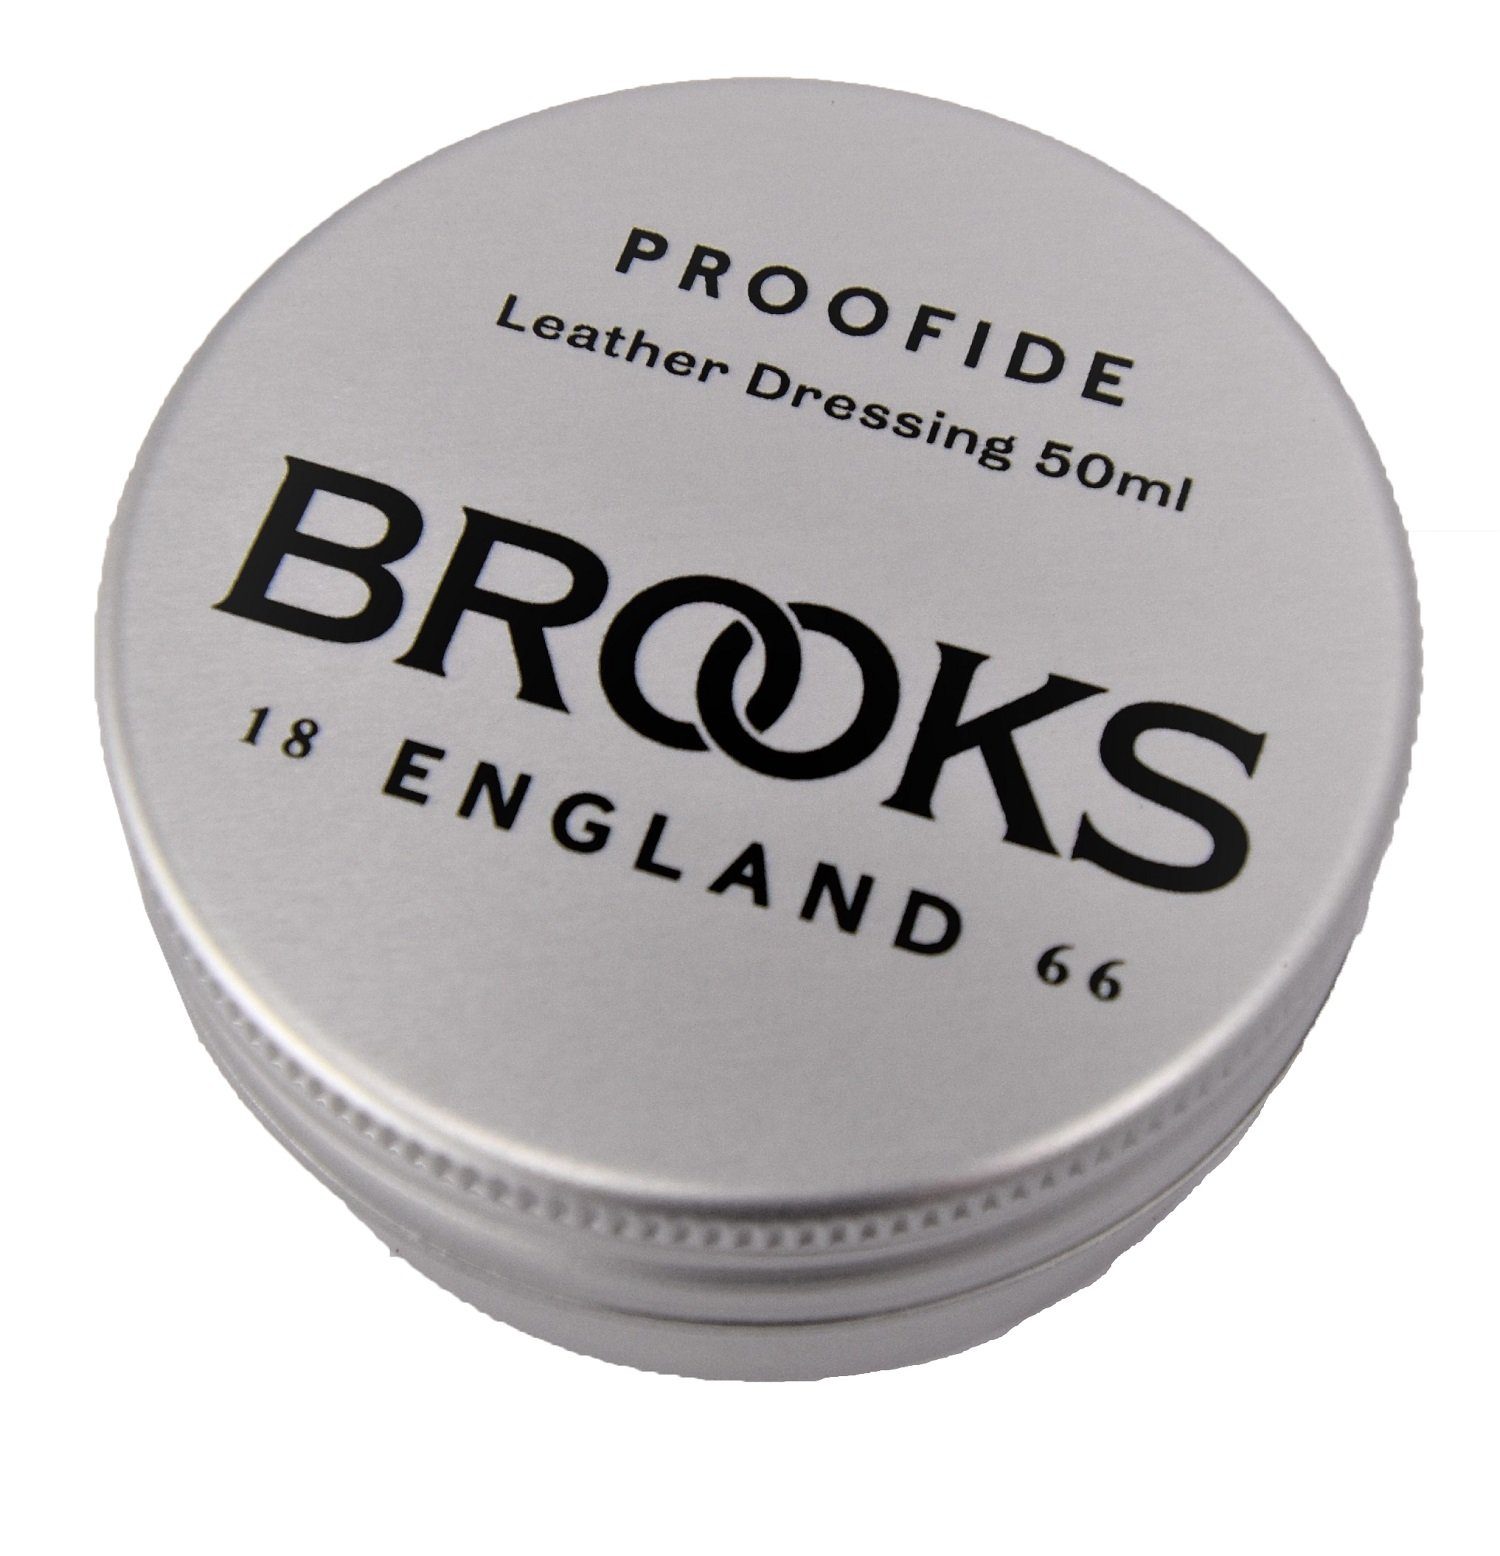 Single Brooks Fahrrad-Montageständer Lederpflege Proofide 50ml Brooks